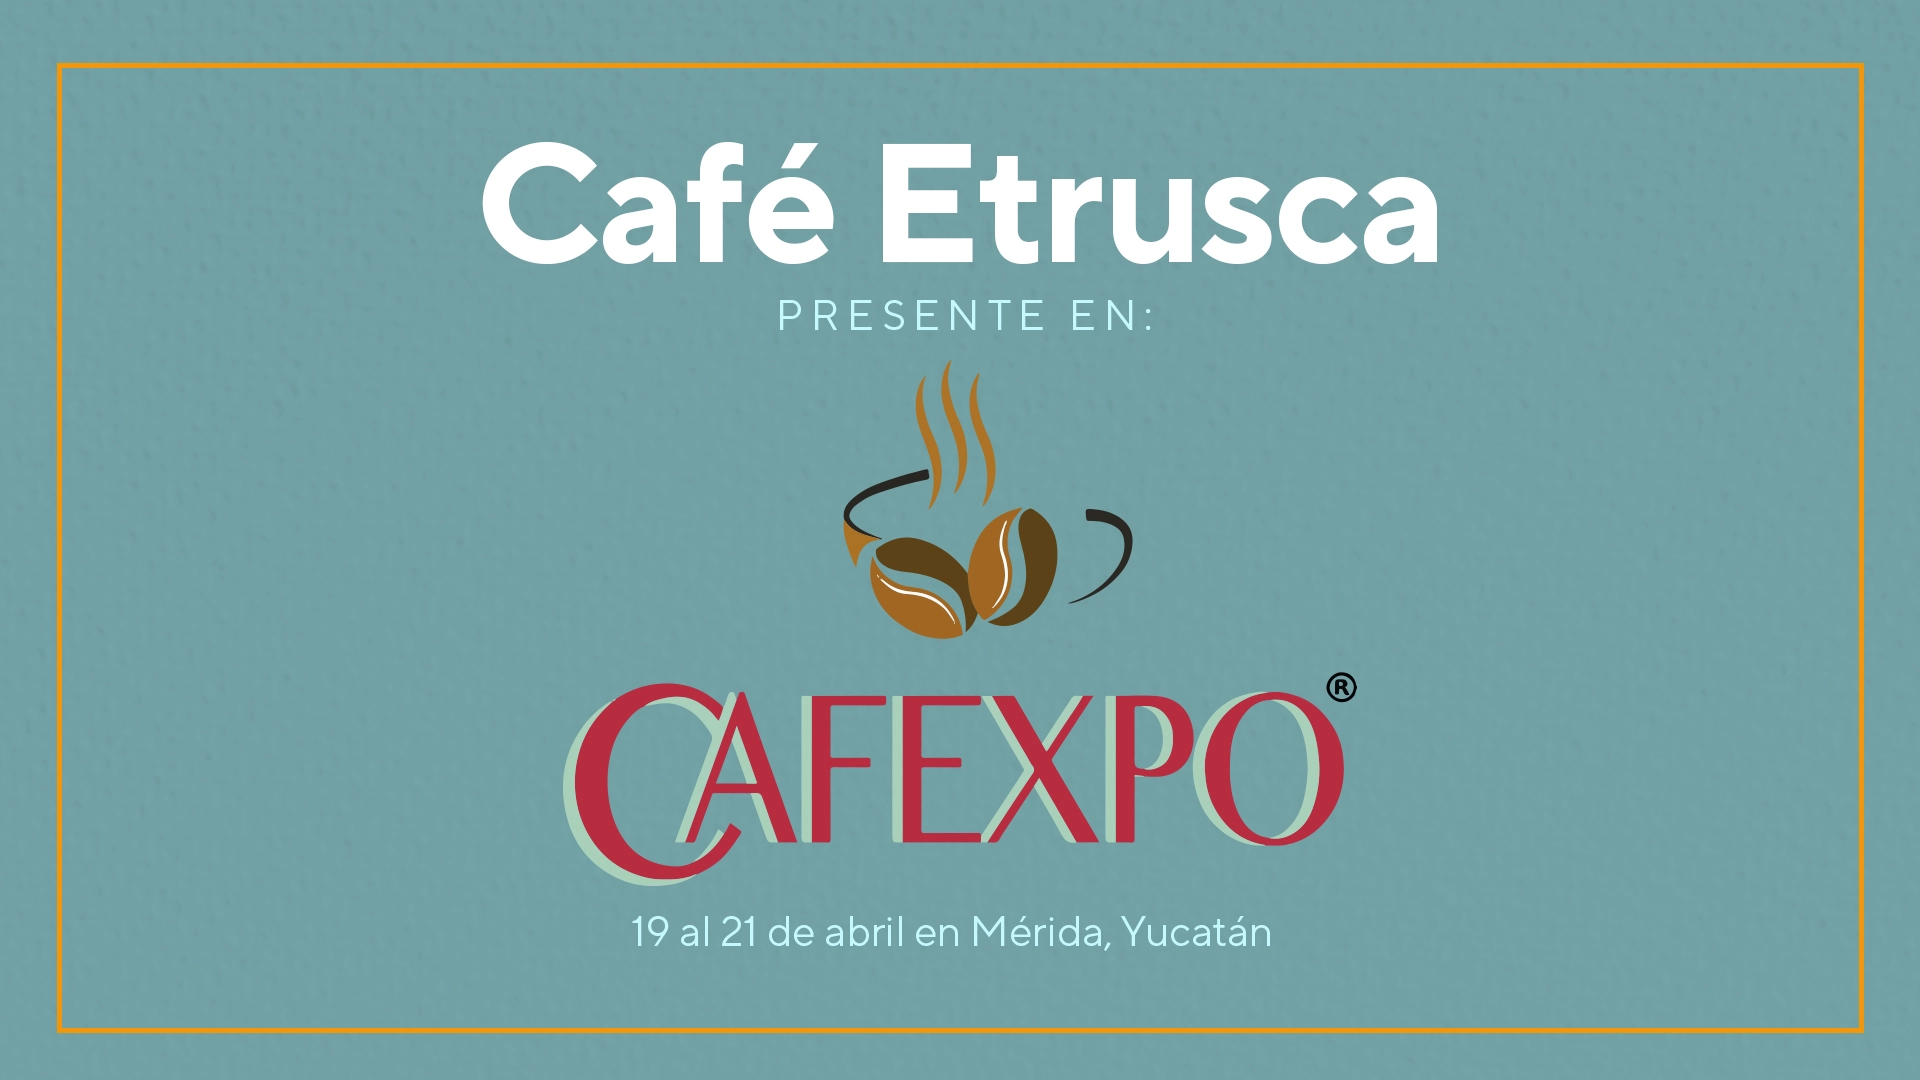 Café Expo